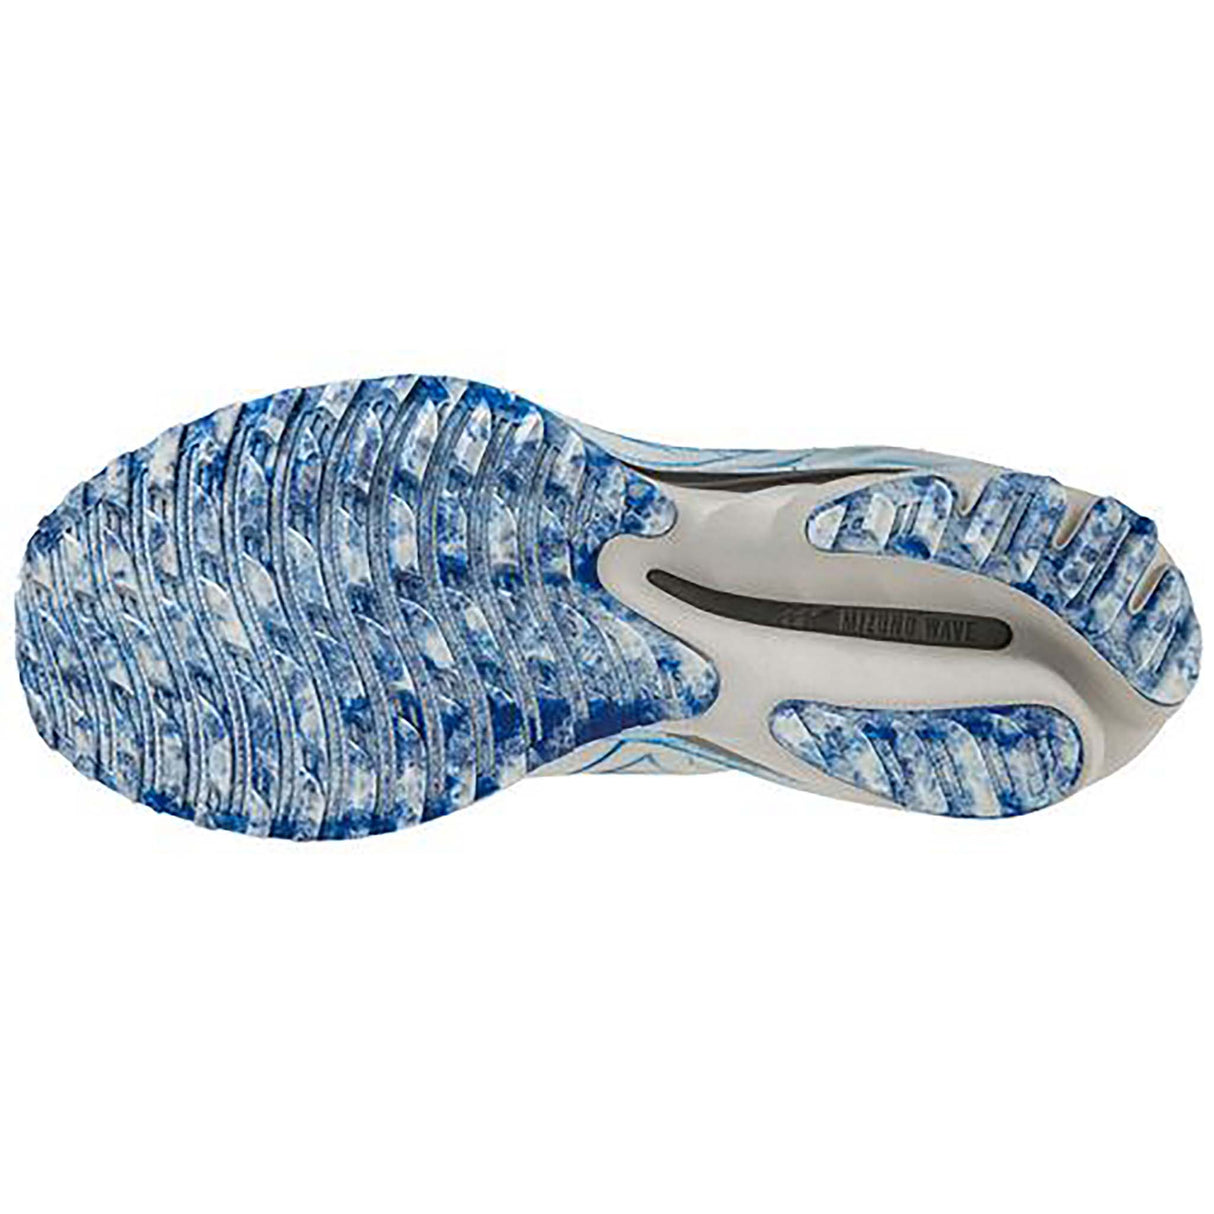 Mizuno Wave Neo Wind chaussures de course à pied homme undyed white peace blue semelle